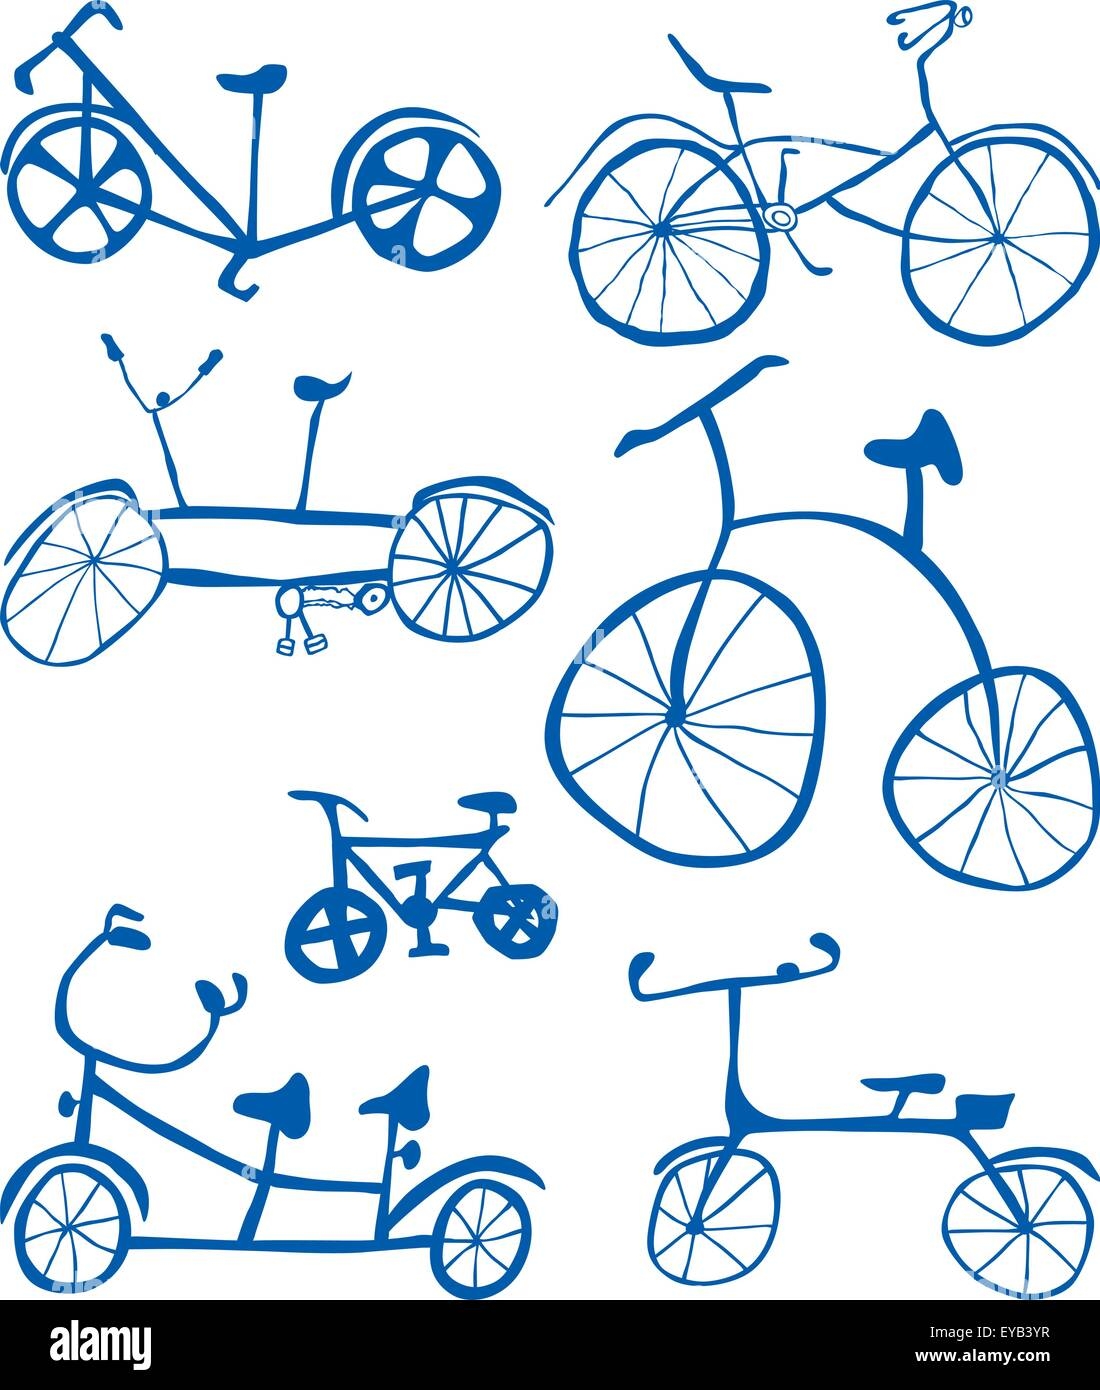 Нарисовать велосипед для детей поэтапно